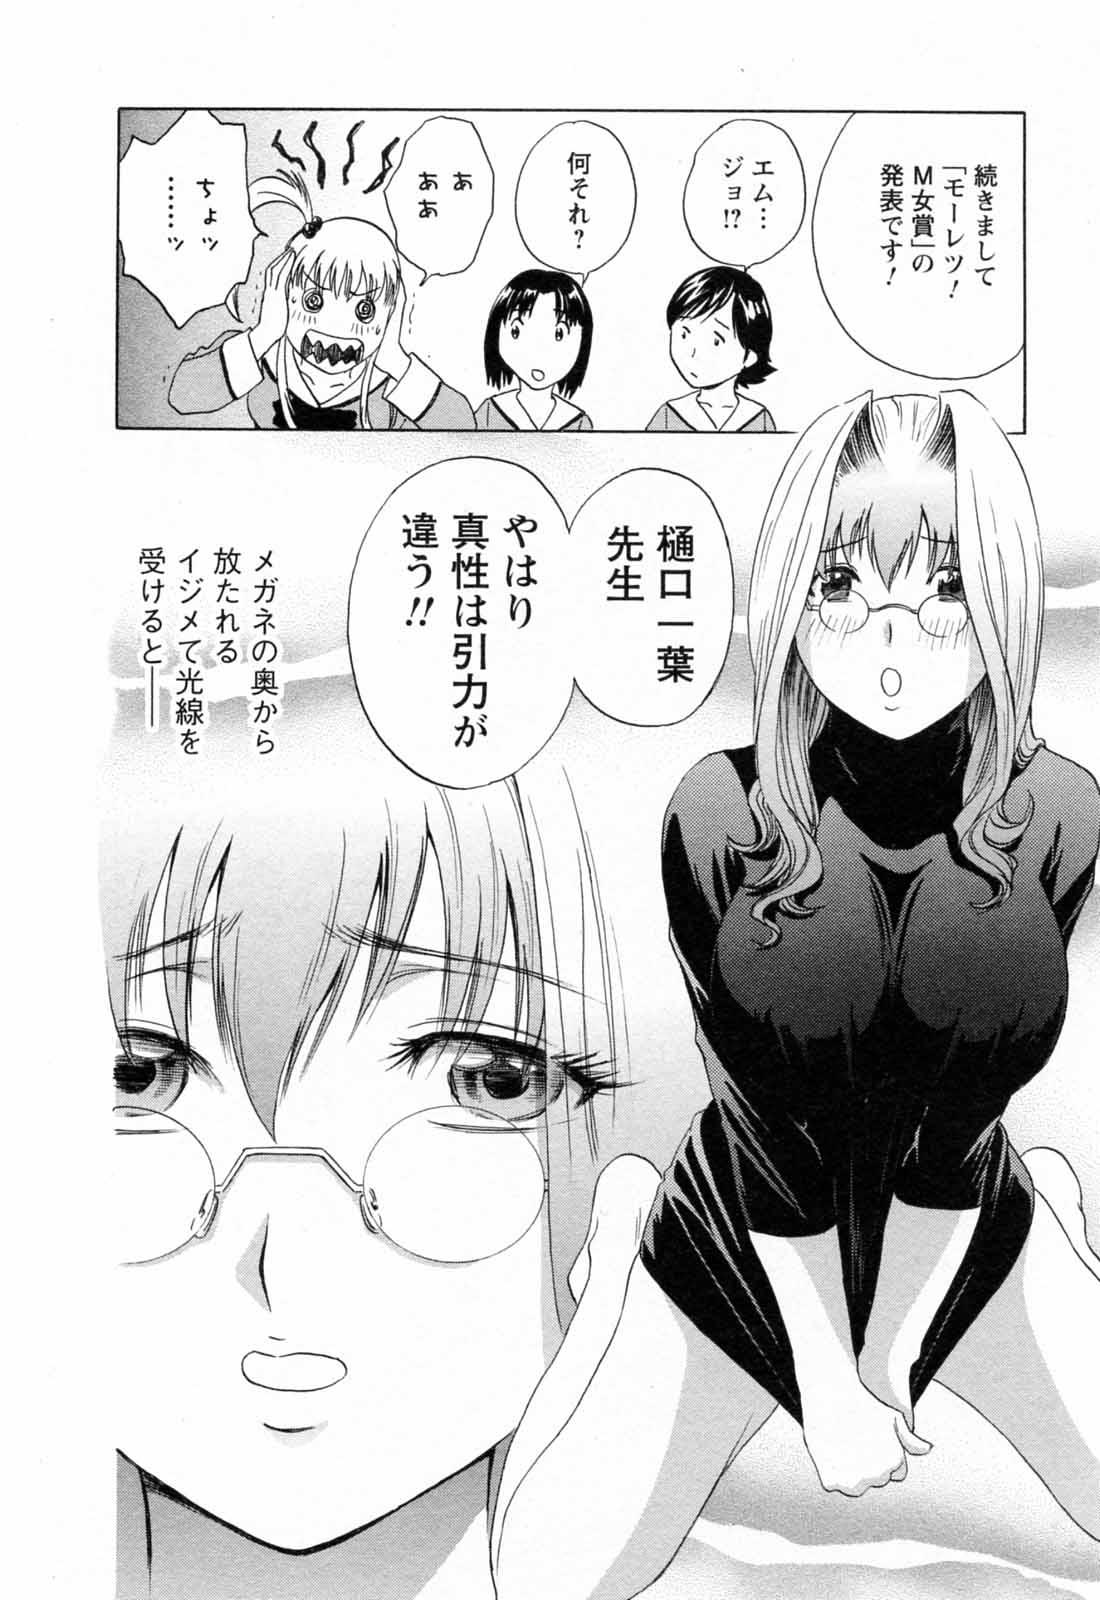 [Hidemaru] Mo-Retsu! Boin Sensei (Boing Boing Teacher) Vol.5 183